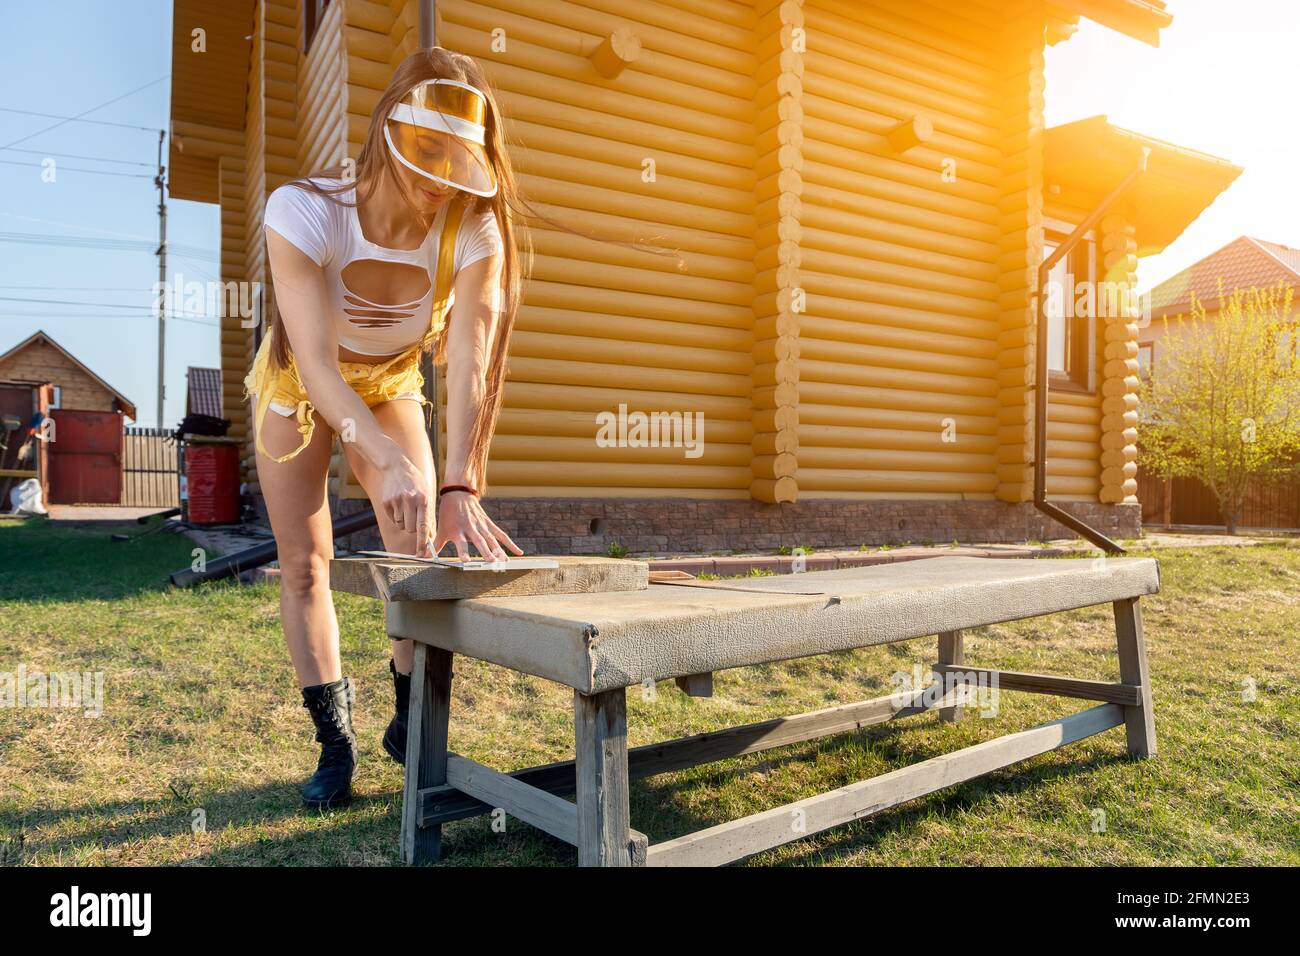 Jeune femme sportive en jeans et crop top est scier du bois dans une atmosphère rustique pendant une chaude journée d'été, dans le fond une maison en bois et une pelouse Banque D'Images